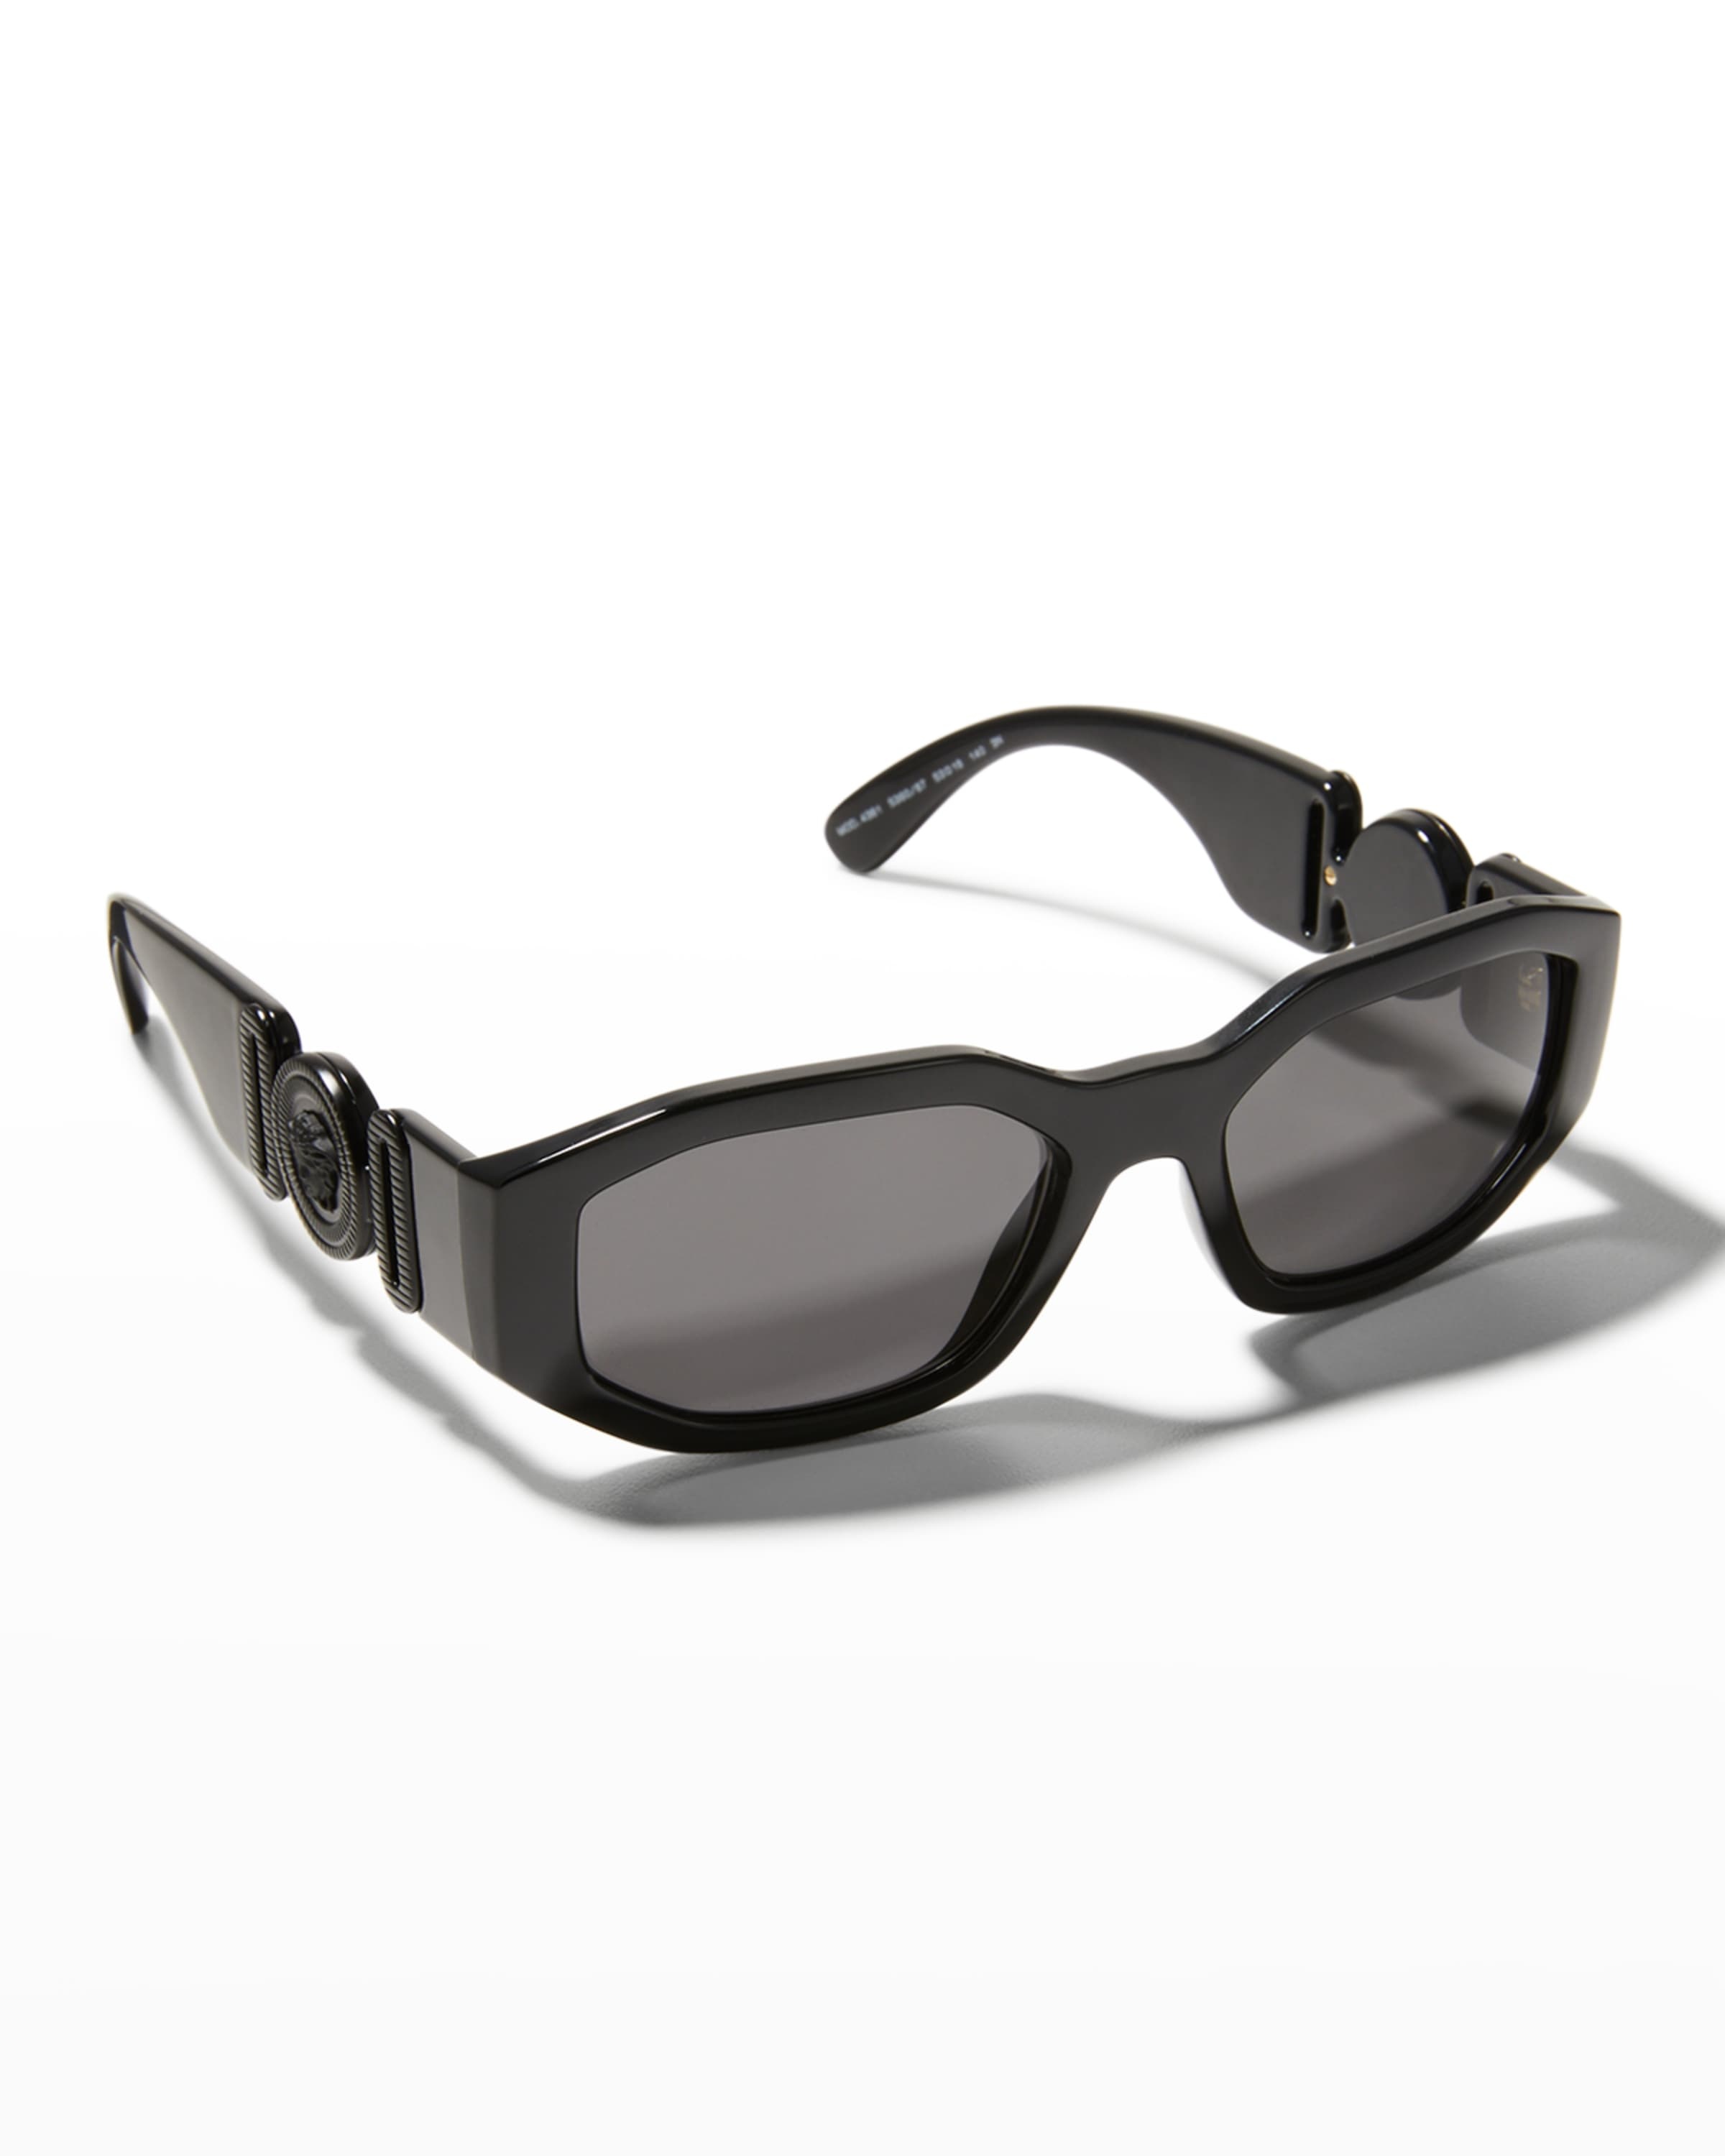 Men's Geometric Propionate Sunglasses - 1